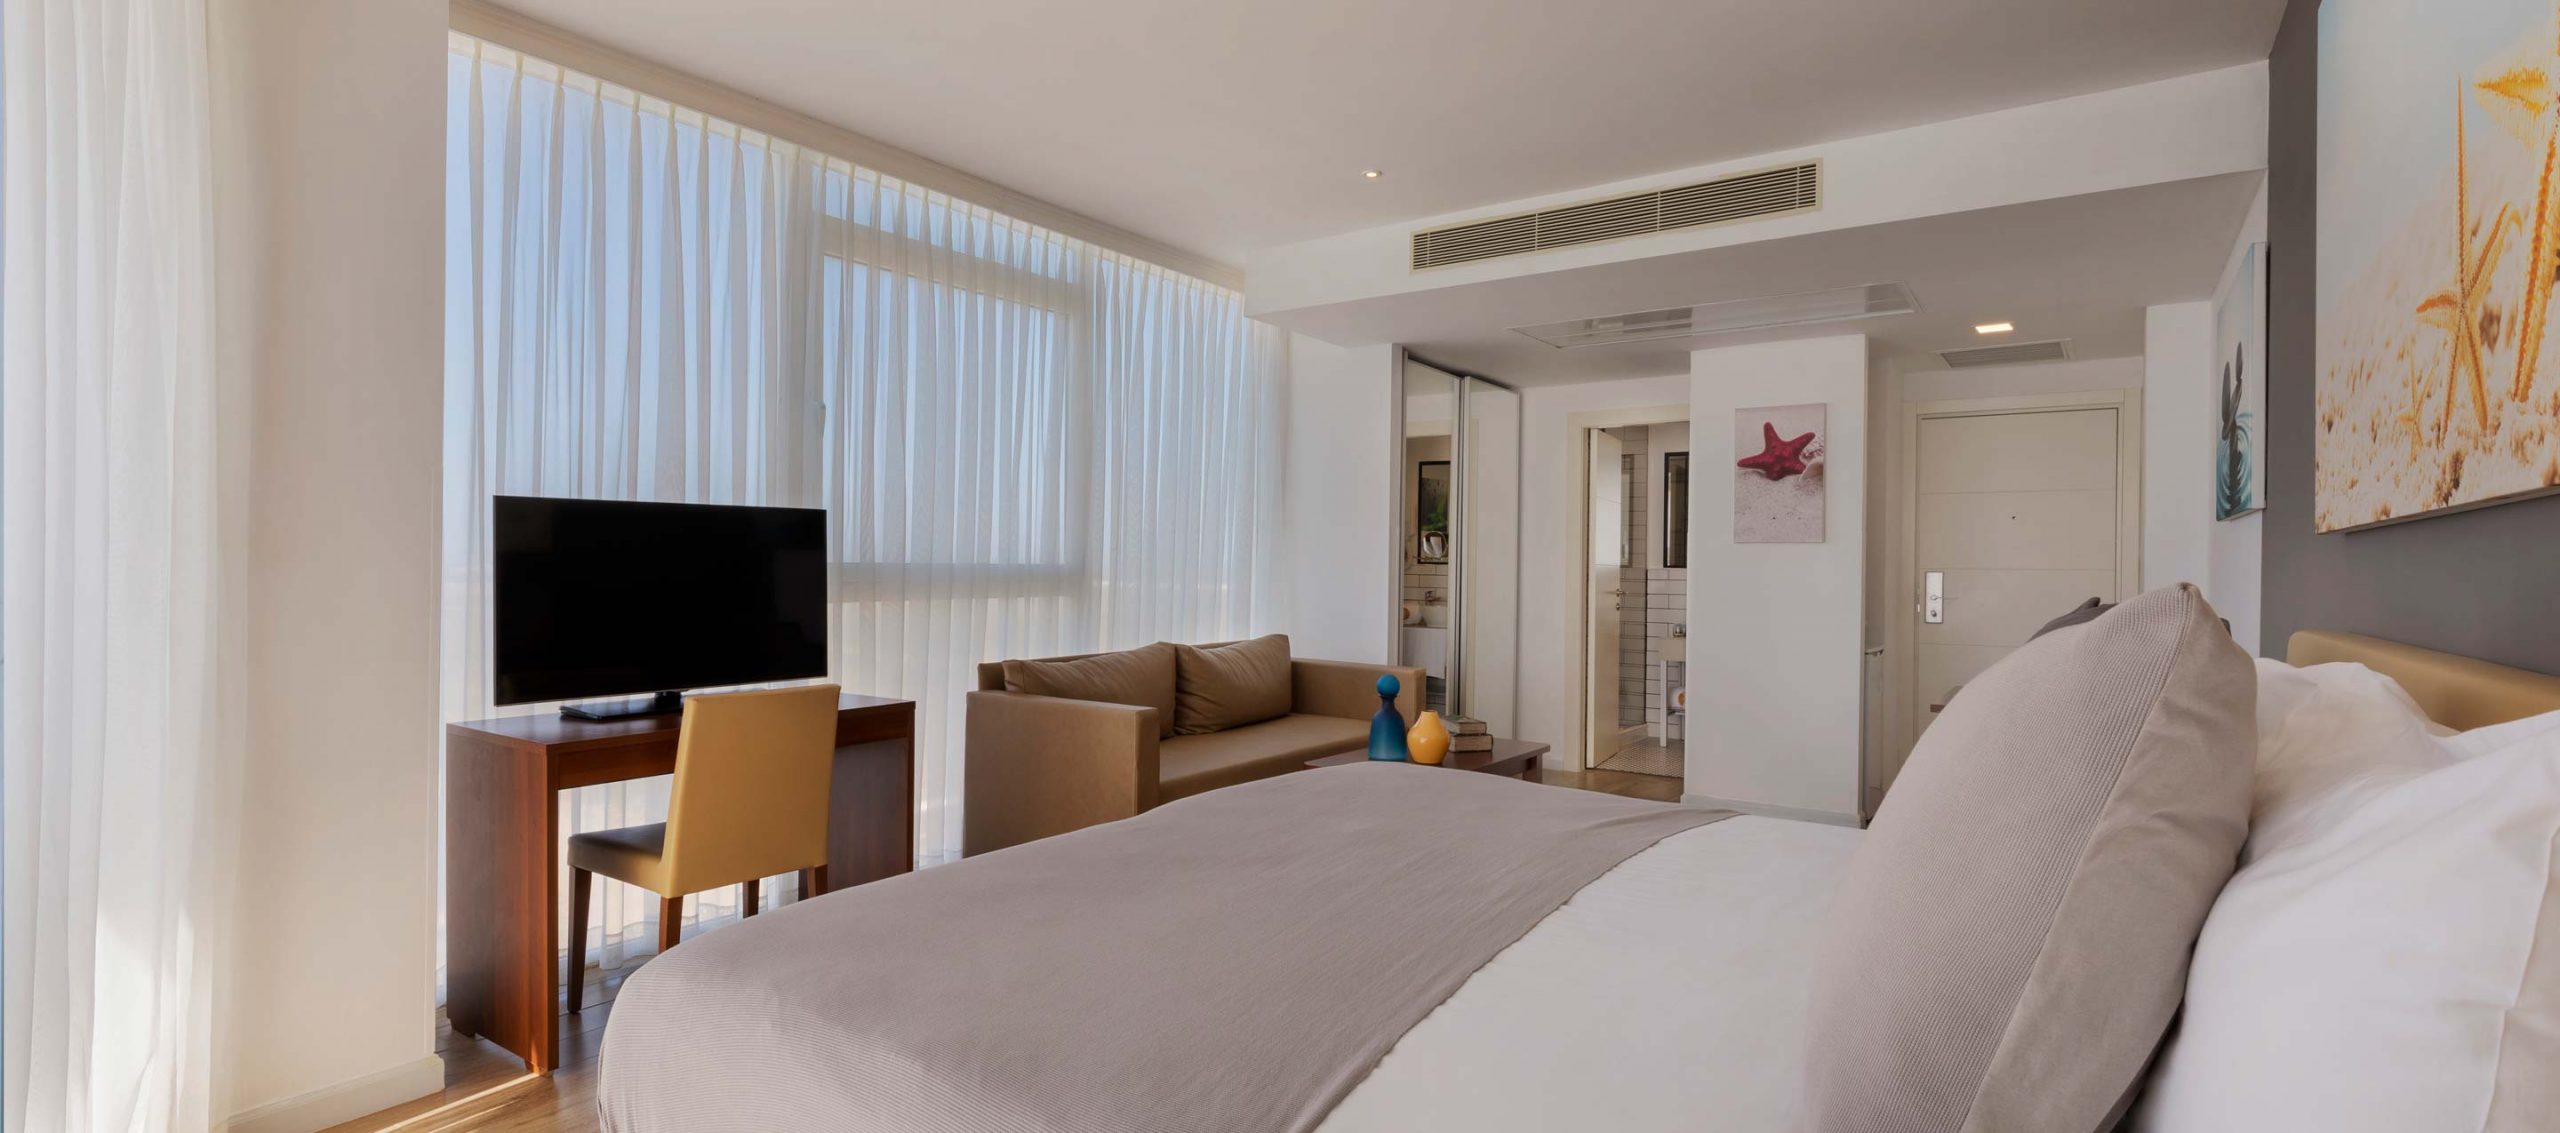 מלונות בתל אביב בריכות שחייה פרטיות עם נוף במלונות מבינים עם ניסיון רב